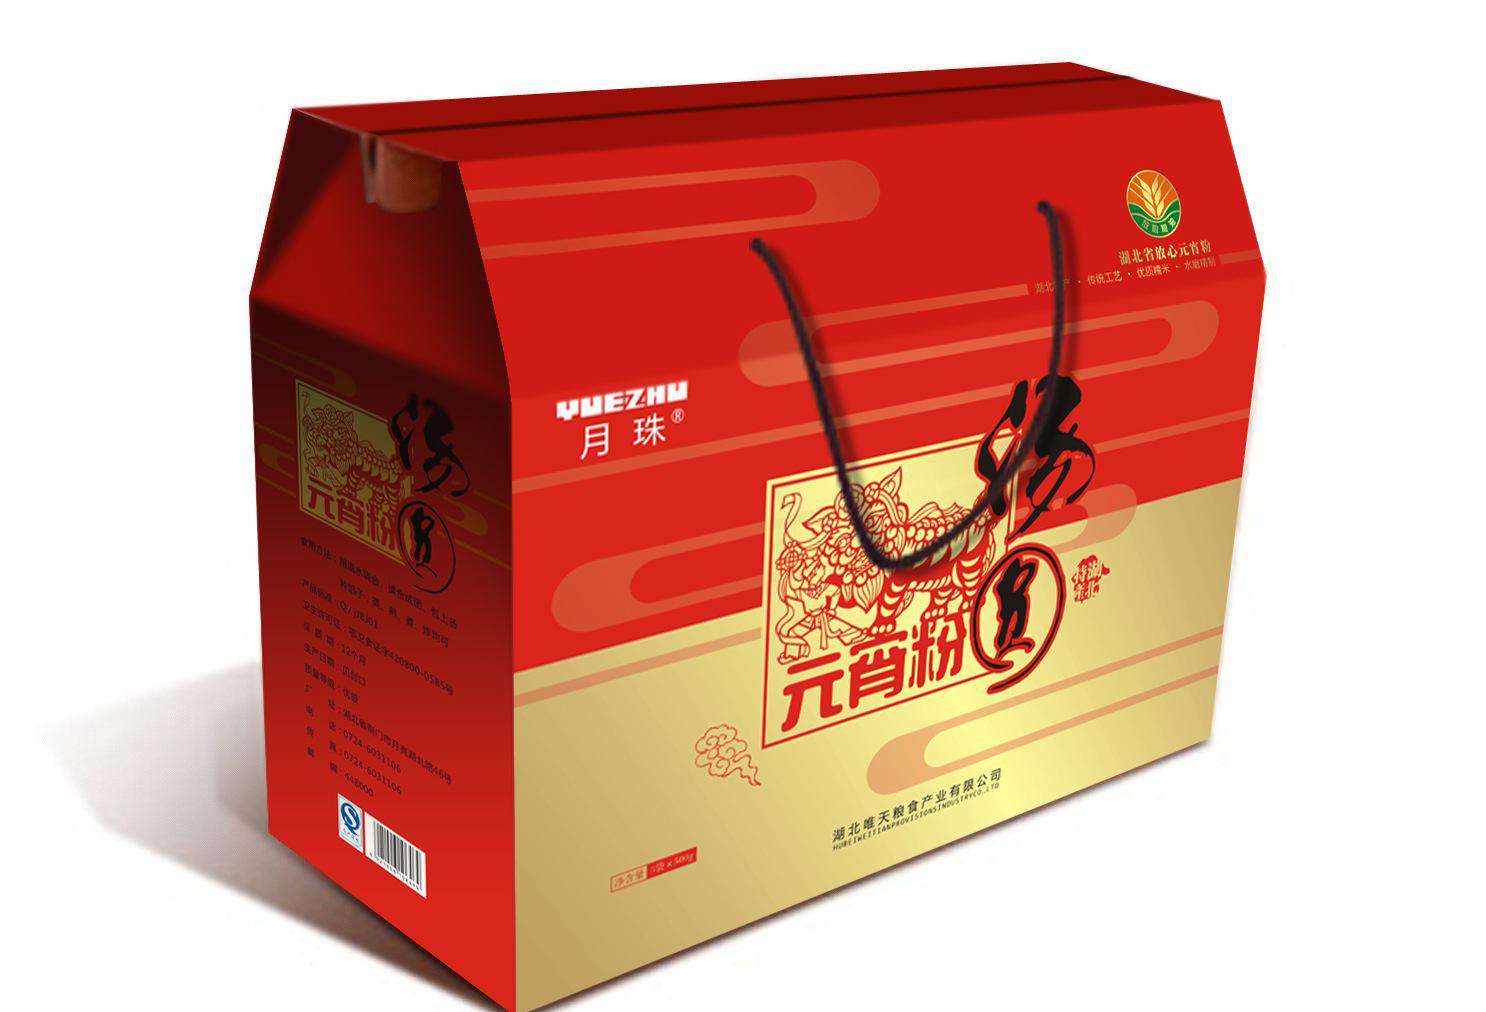 宿州特产礼品盒 香蕉包装盒印刷 价格便宜